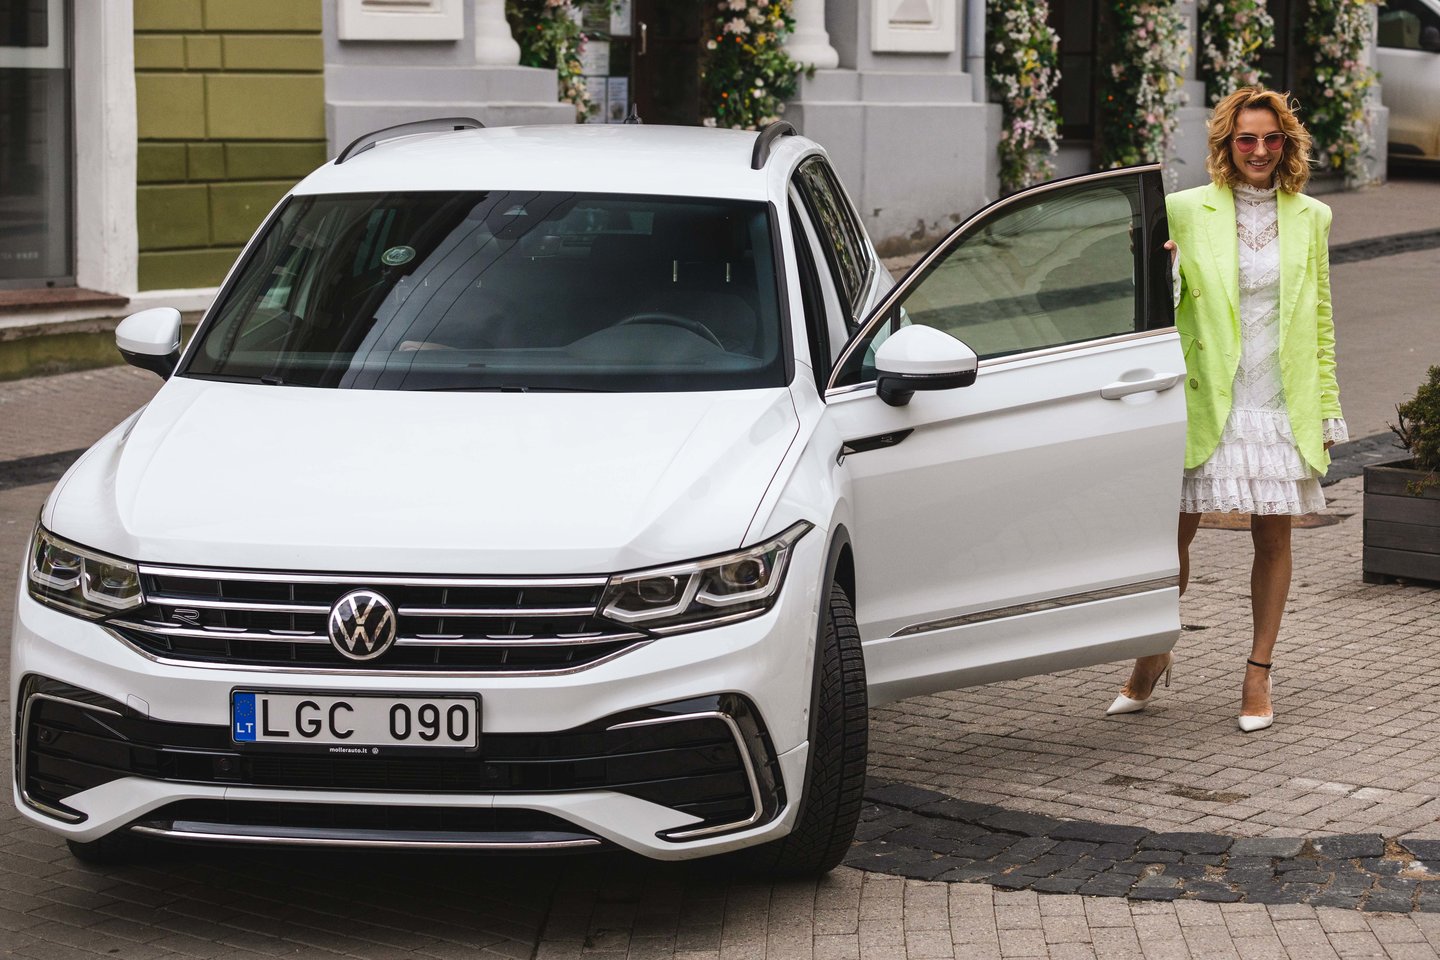 Indrė Kavaliauskaitė išbandė naująjį „Volkswagen Tiguan“.